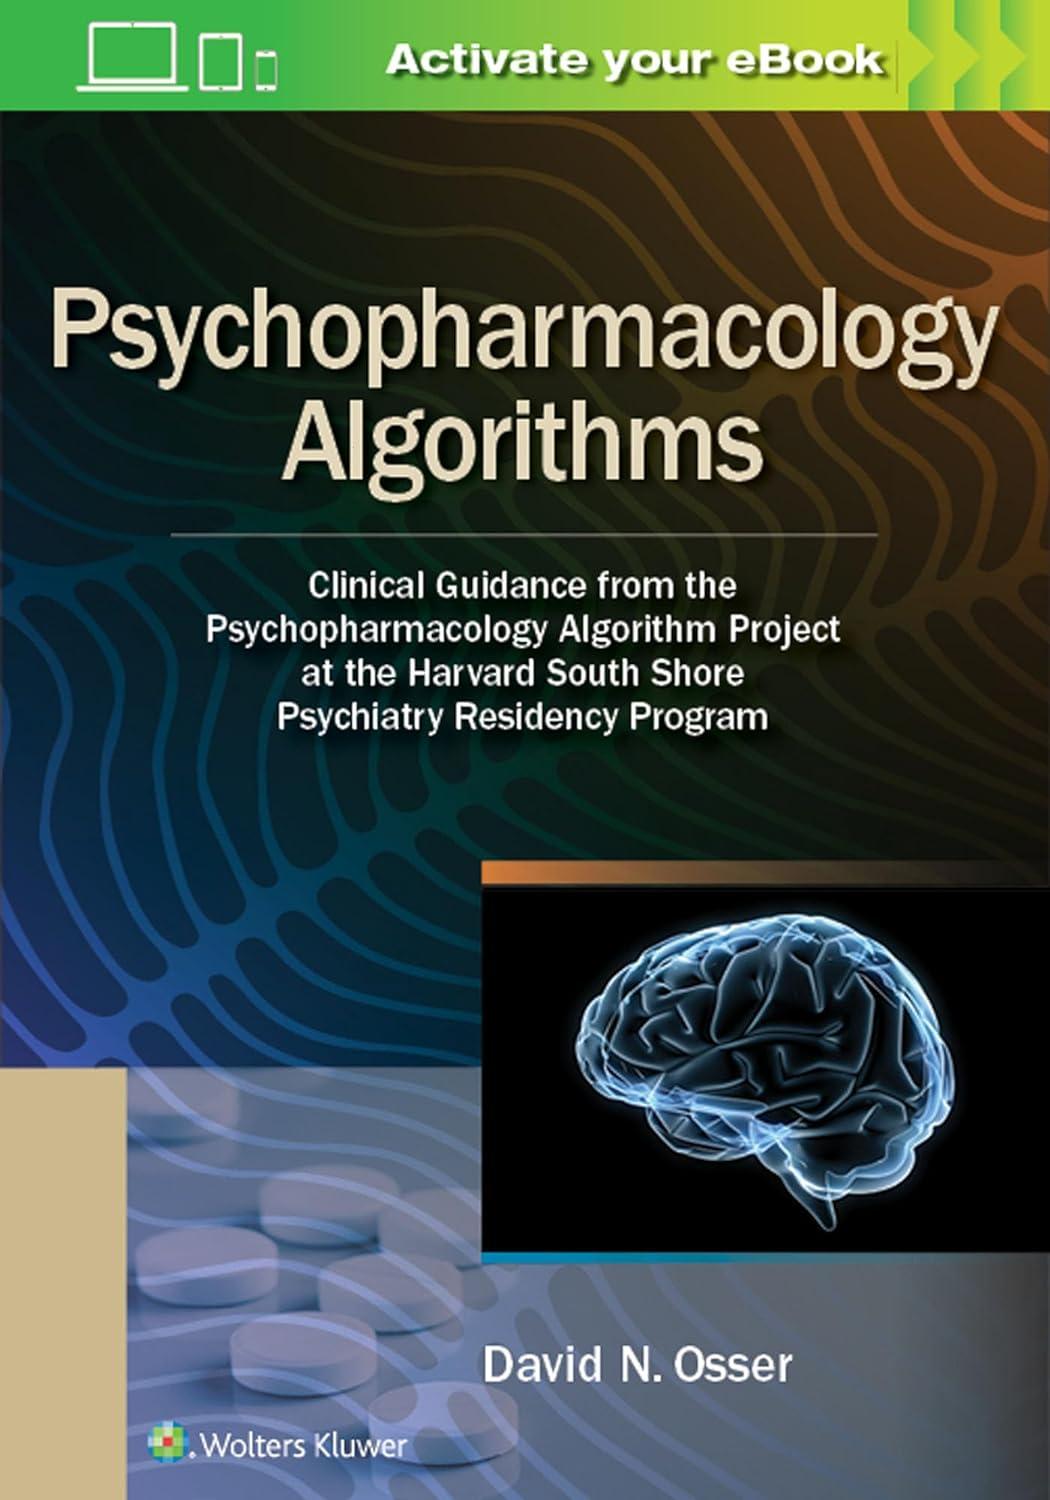 psychopharmacology algorithms clinical guidance from the psychopharmacology algorithm project at the harvard